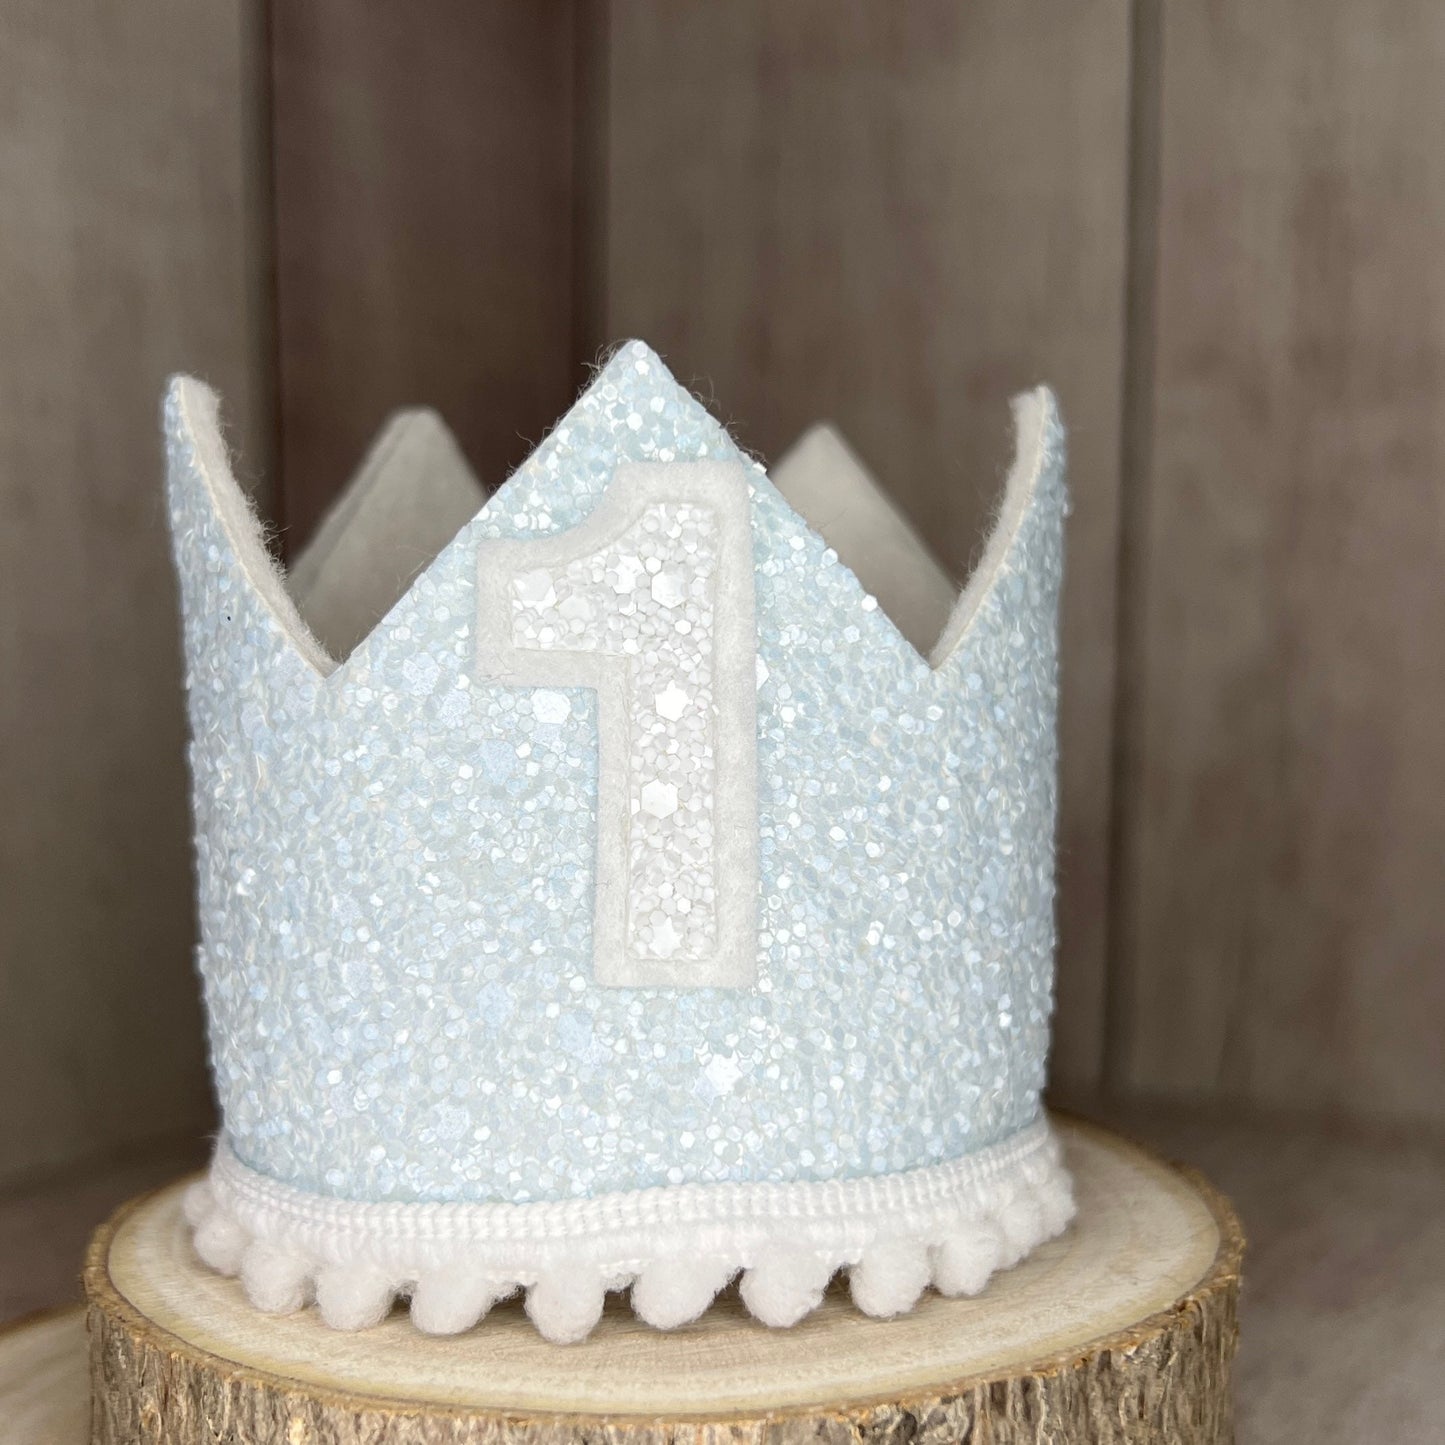 Birthday Crown - blue & white